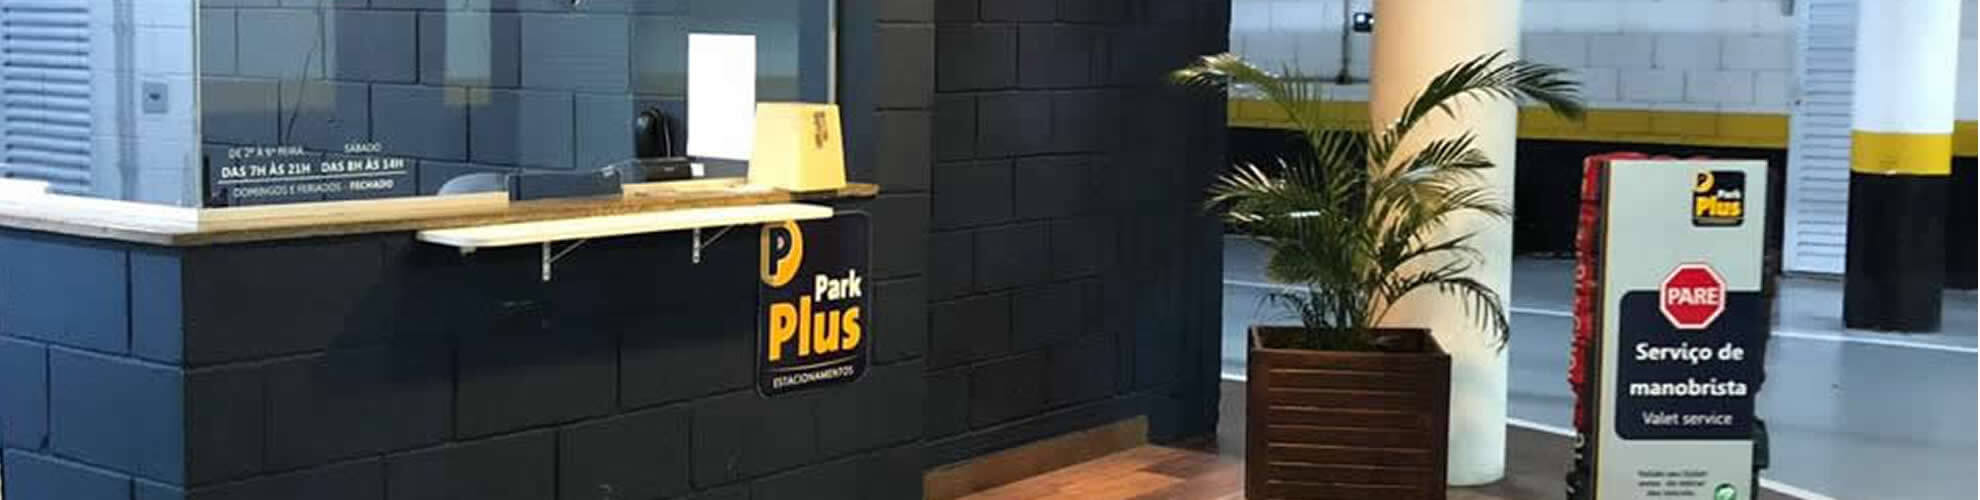 Park Plus Estacionamentos